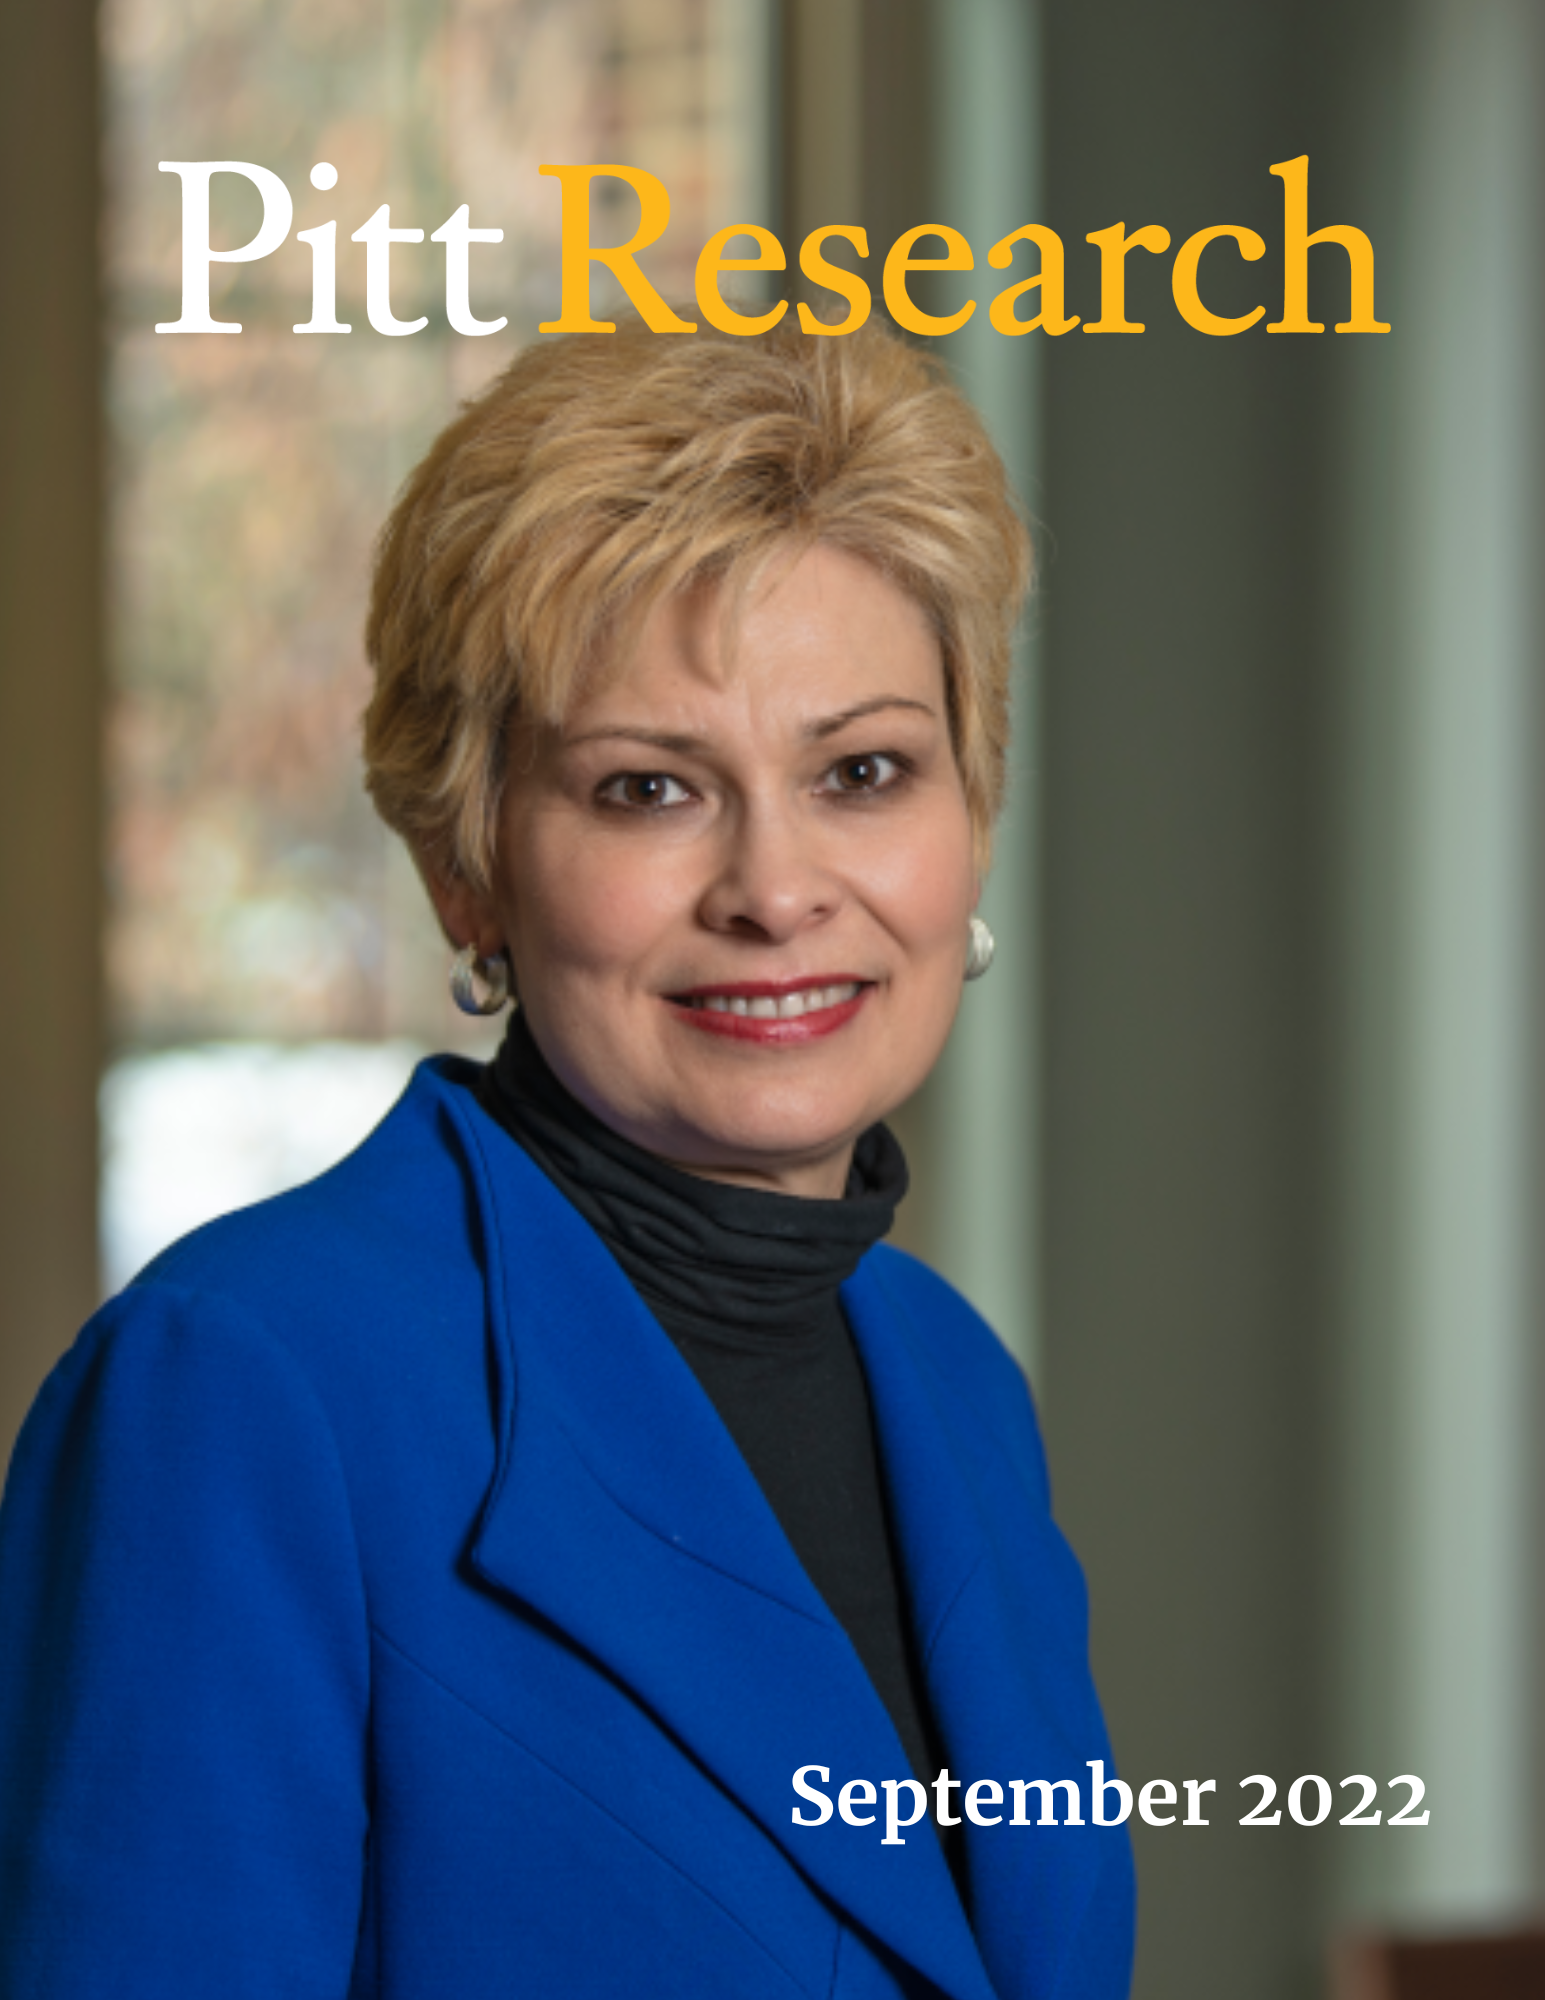 Pitt Research Newsletter for September 2022